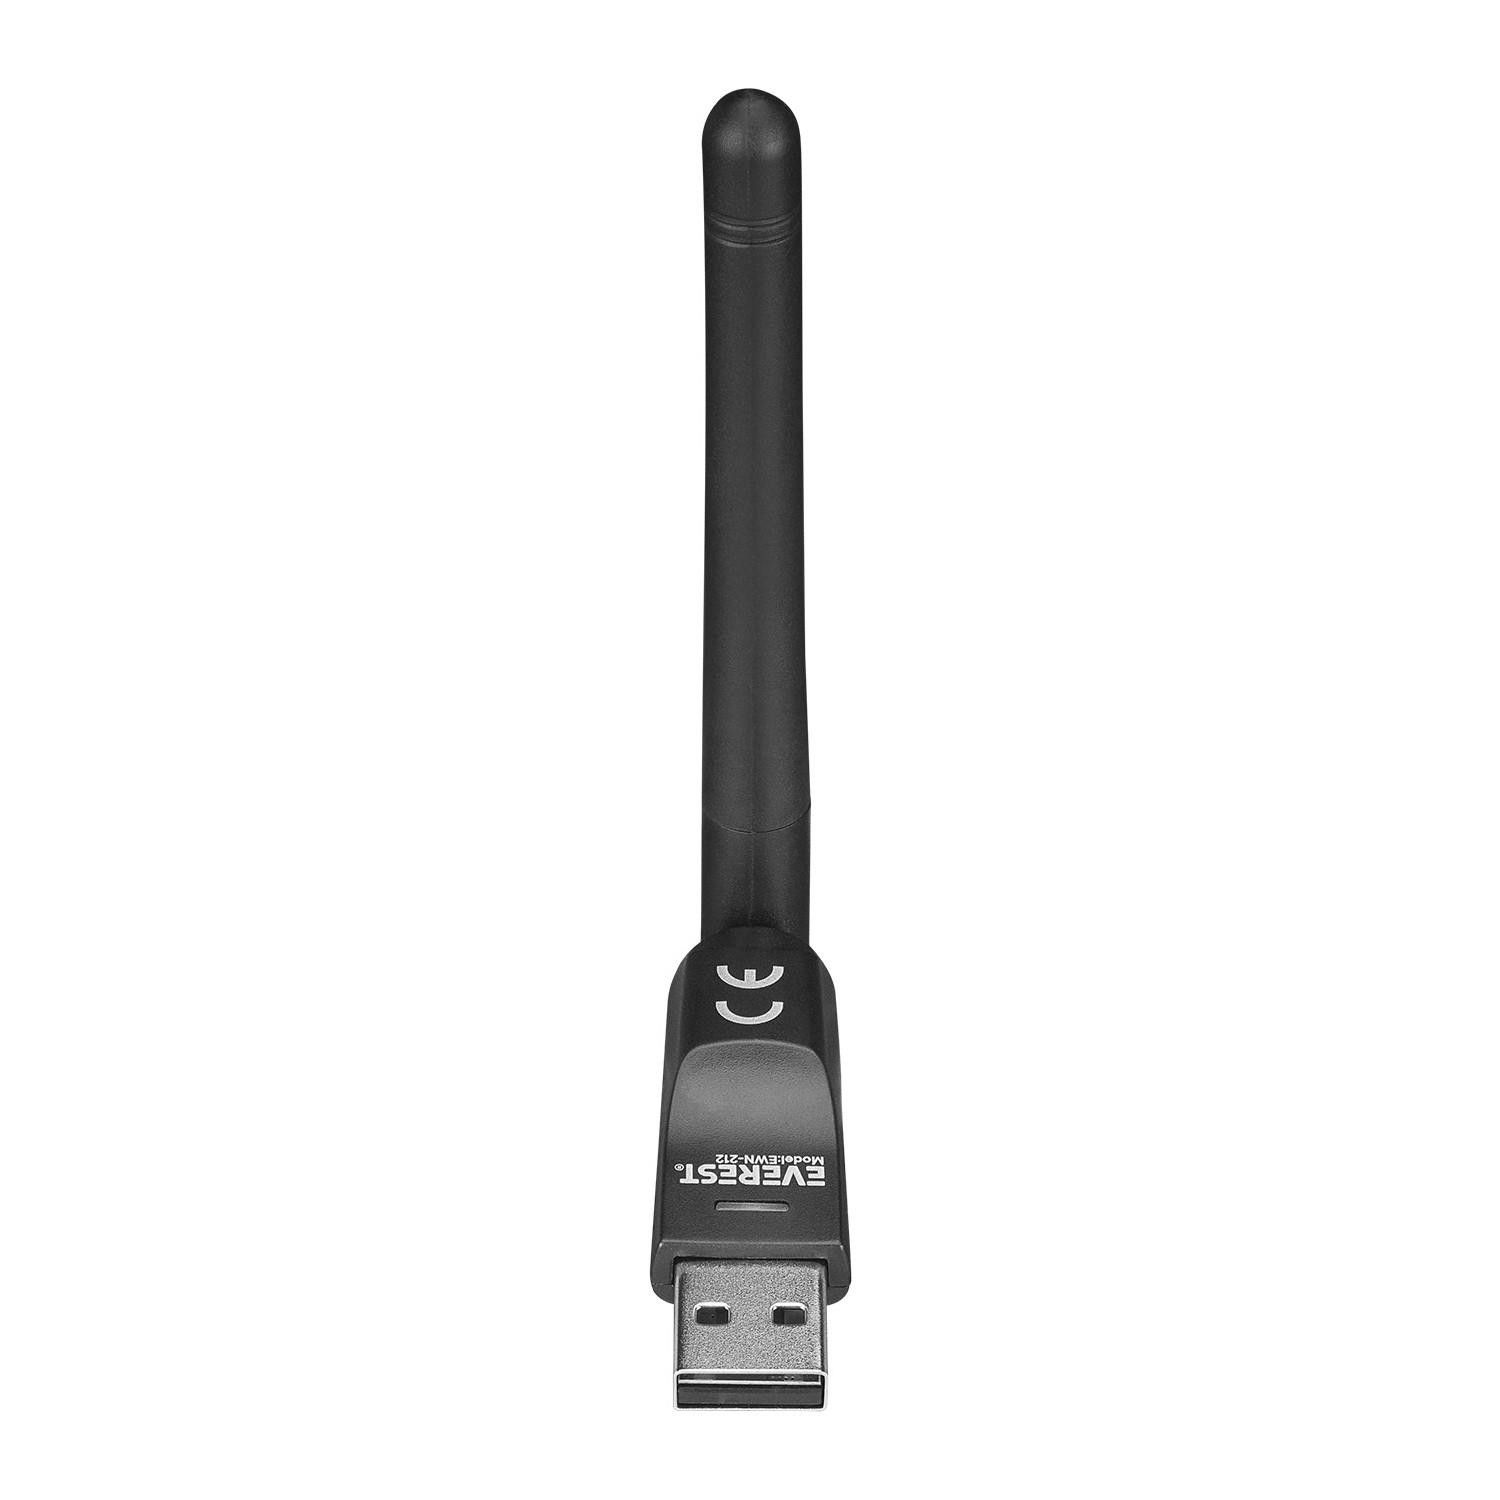 Everest EWN-212 150 Mbps Wireless USB Adaptör